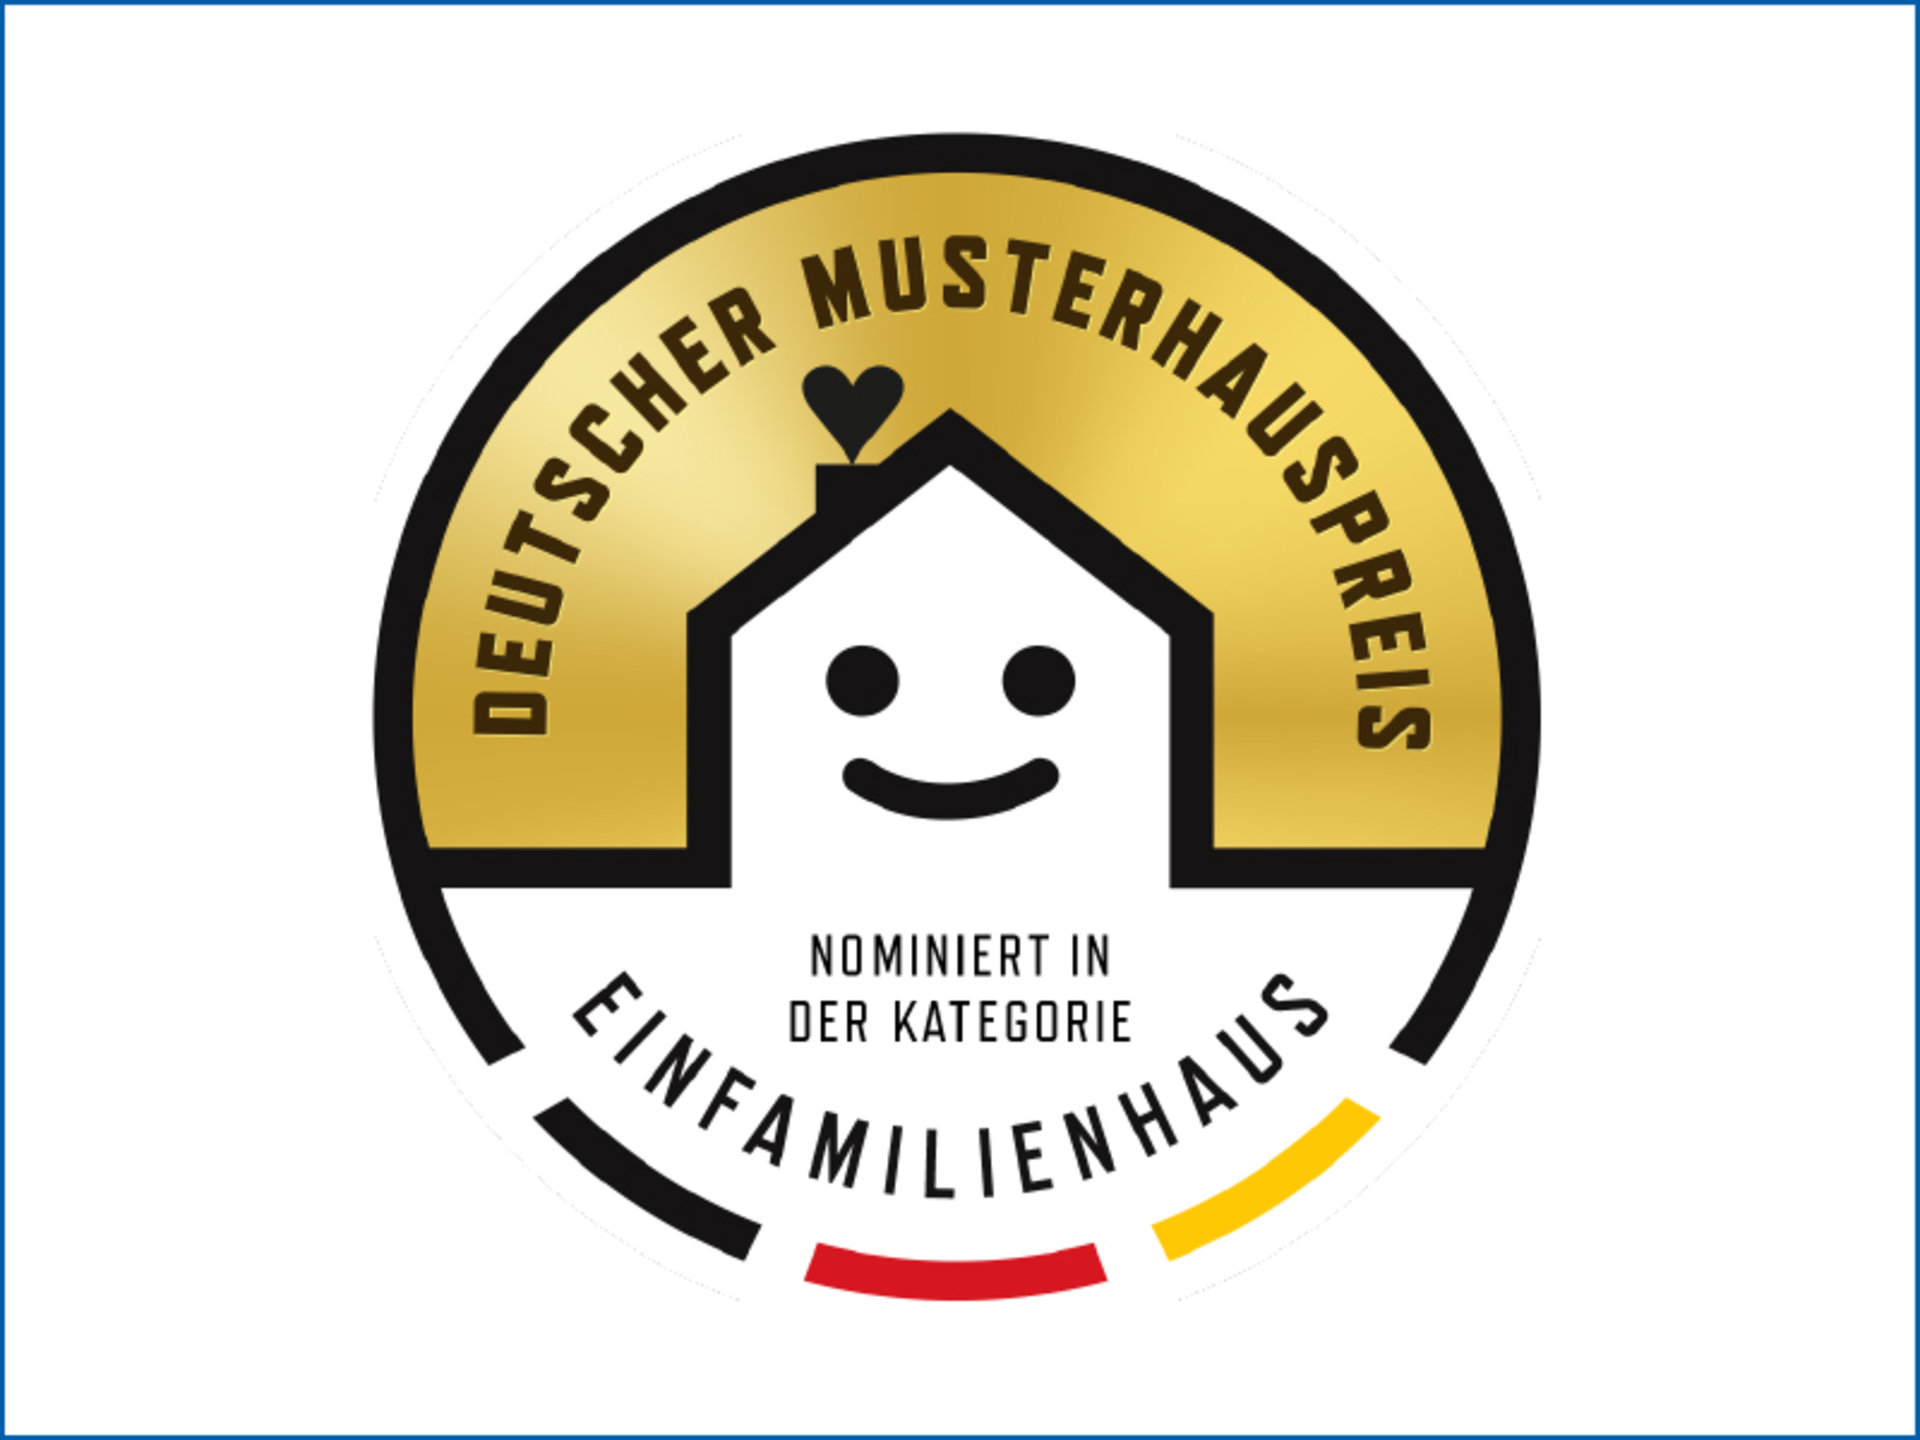 Nominierten-Siegel der Kategorie Einfamilienhaus (Foto: ©Musterhaus.net)